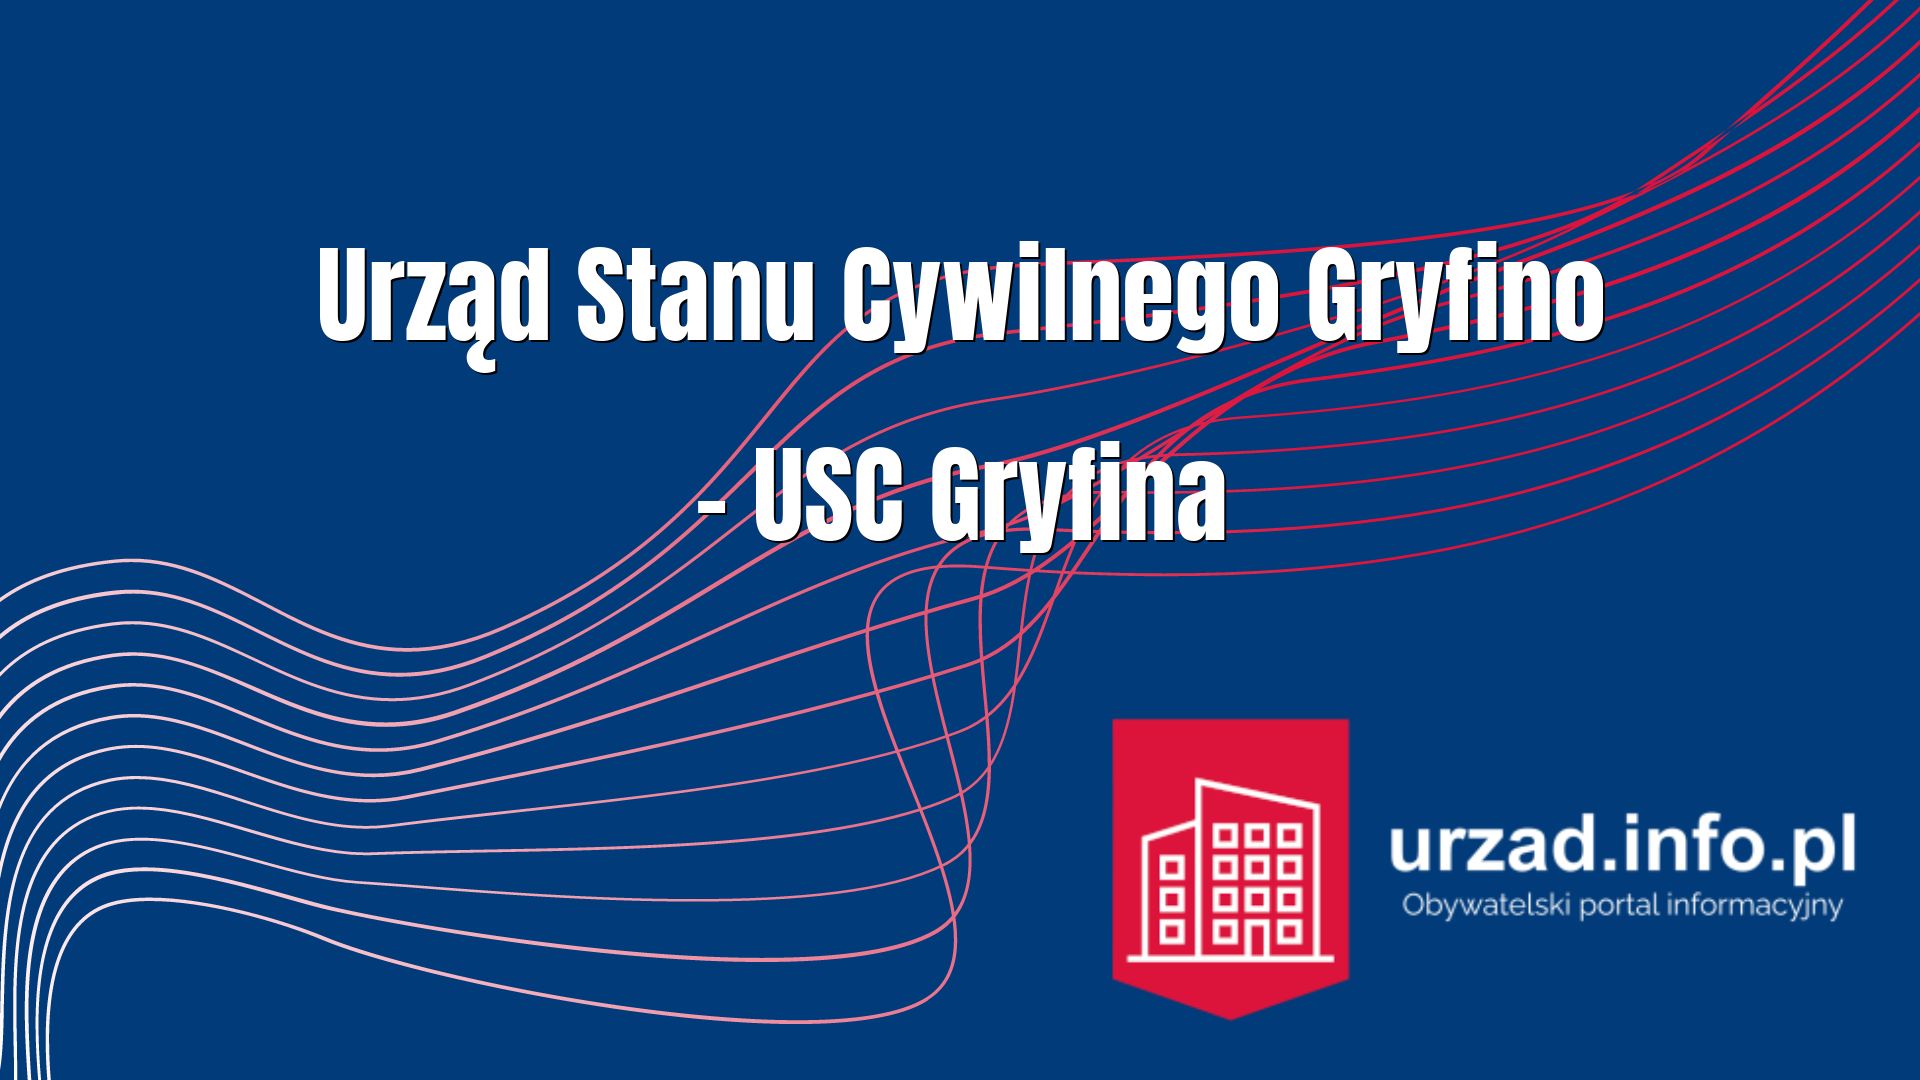 Urząd Stanu Cywilnego Gryfino – USC Gryfina